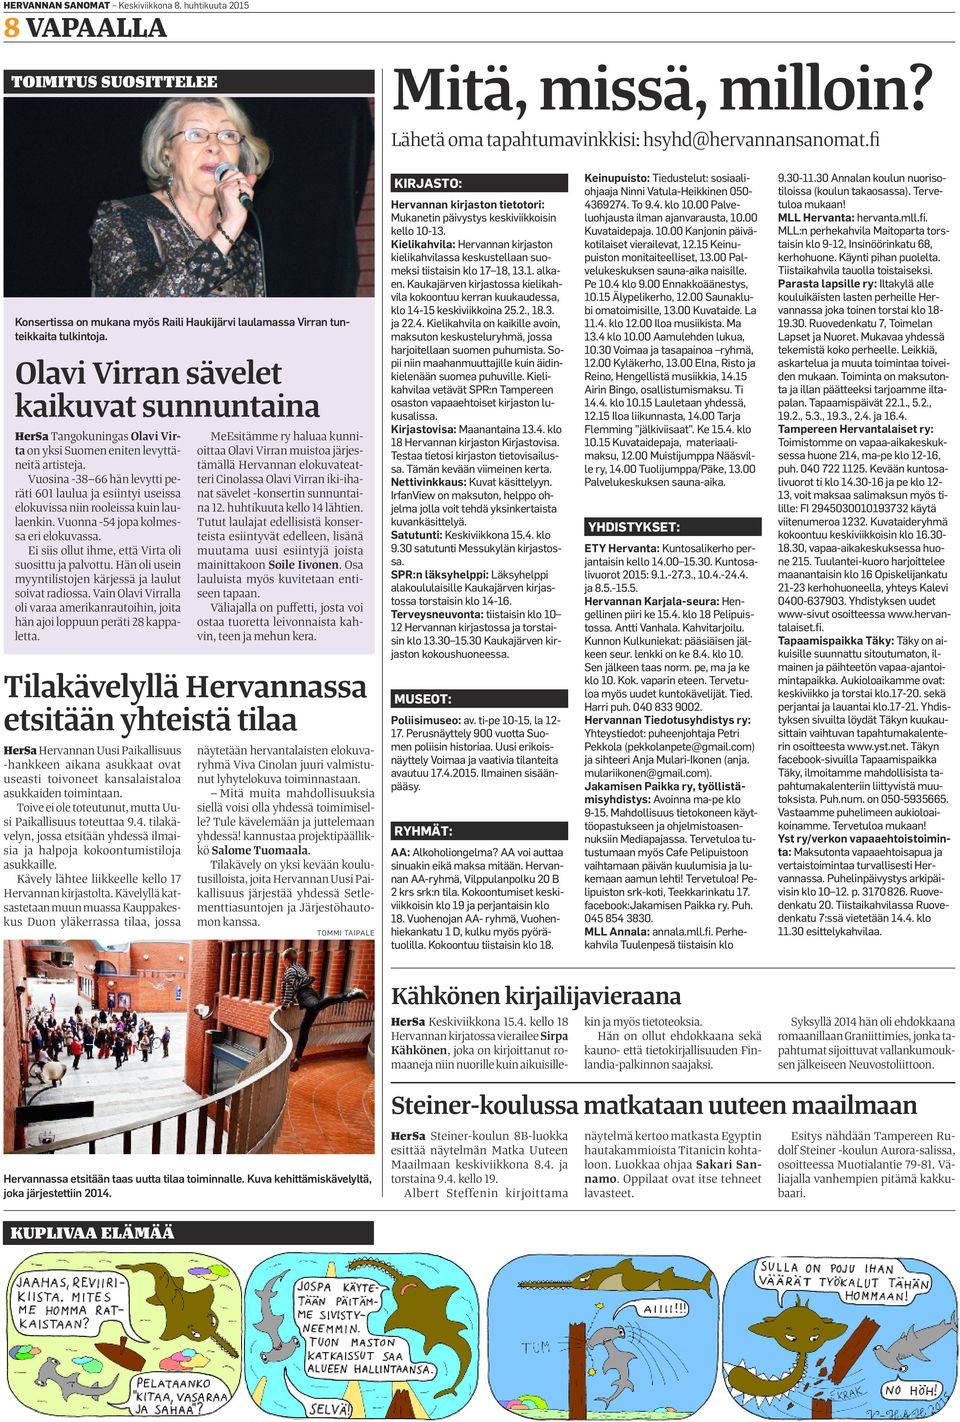 Olavi Virran sävelet kaikuvat sunnuntaina HerSa Tangokuningas Olavi Virta on yksi Suomen eniten levyttäneitä artisteja.